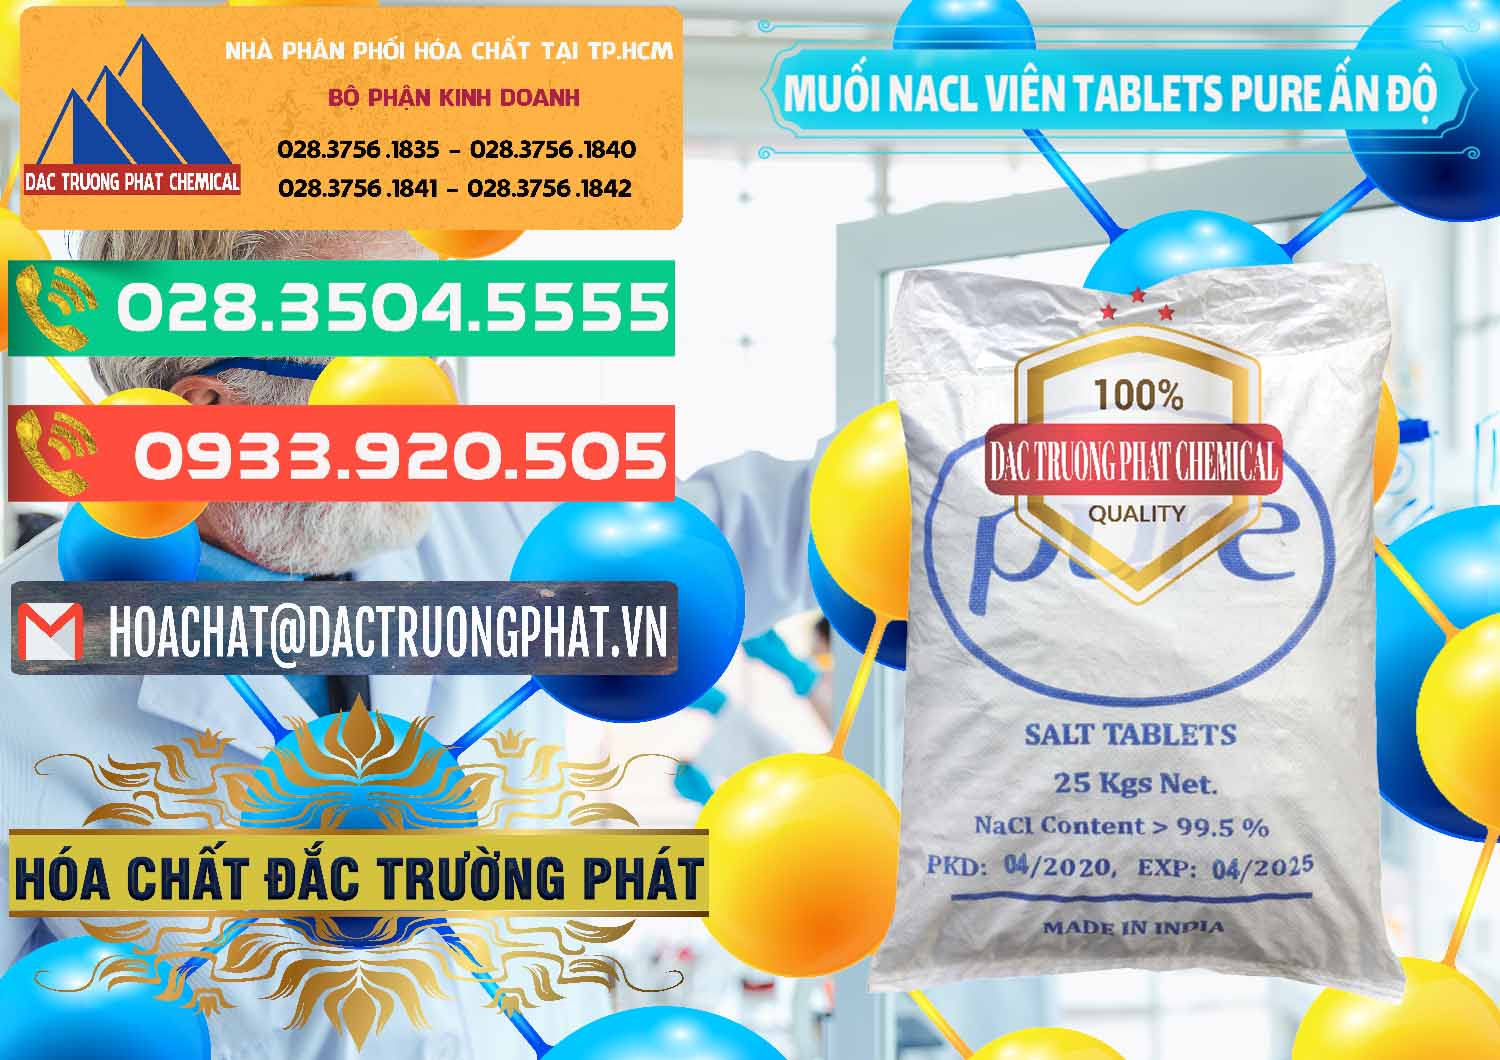 Nơi bán Muối NaCL – Sodium Chloride Dạng Viên Tablets Pure Ấn Độ India - 0294 - Cty cung cấp & phân phối hóa chất tại TP.HCM - congtyhoachat.com.vn